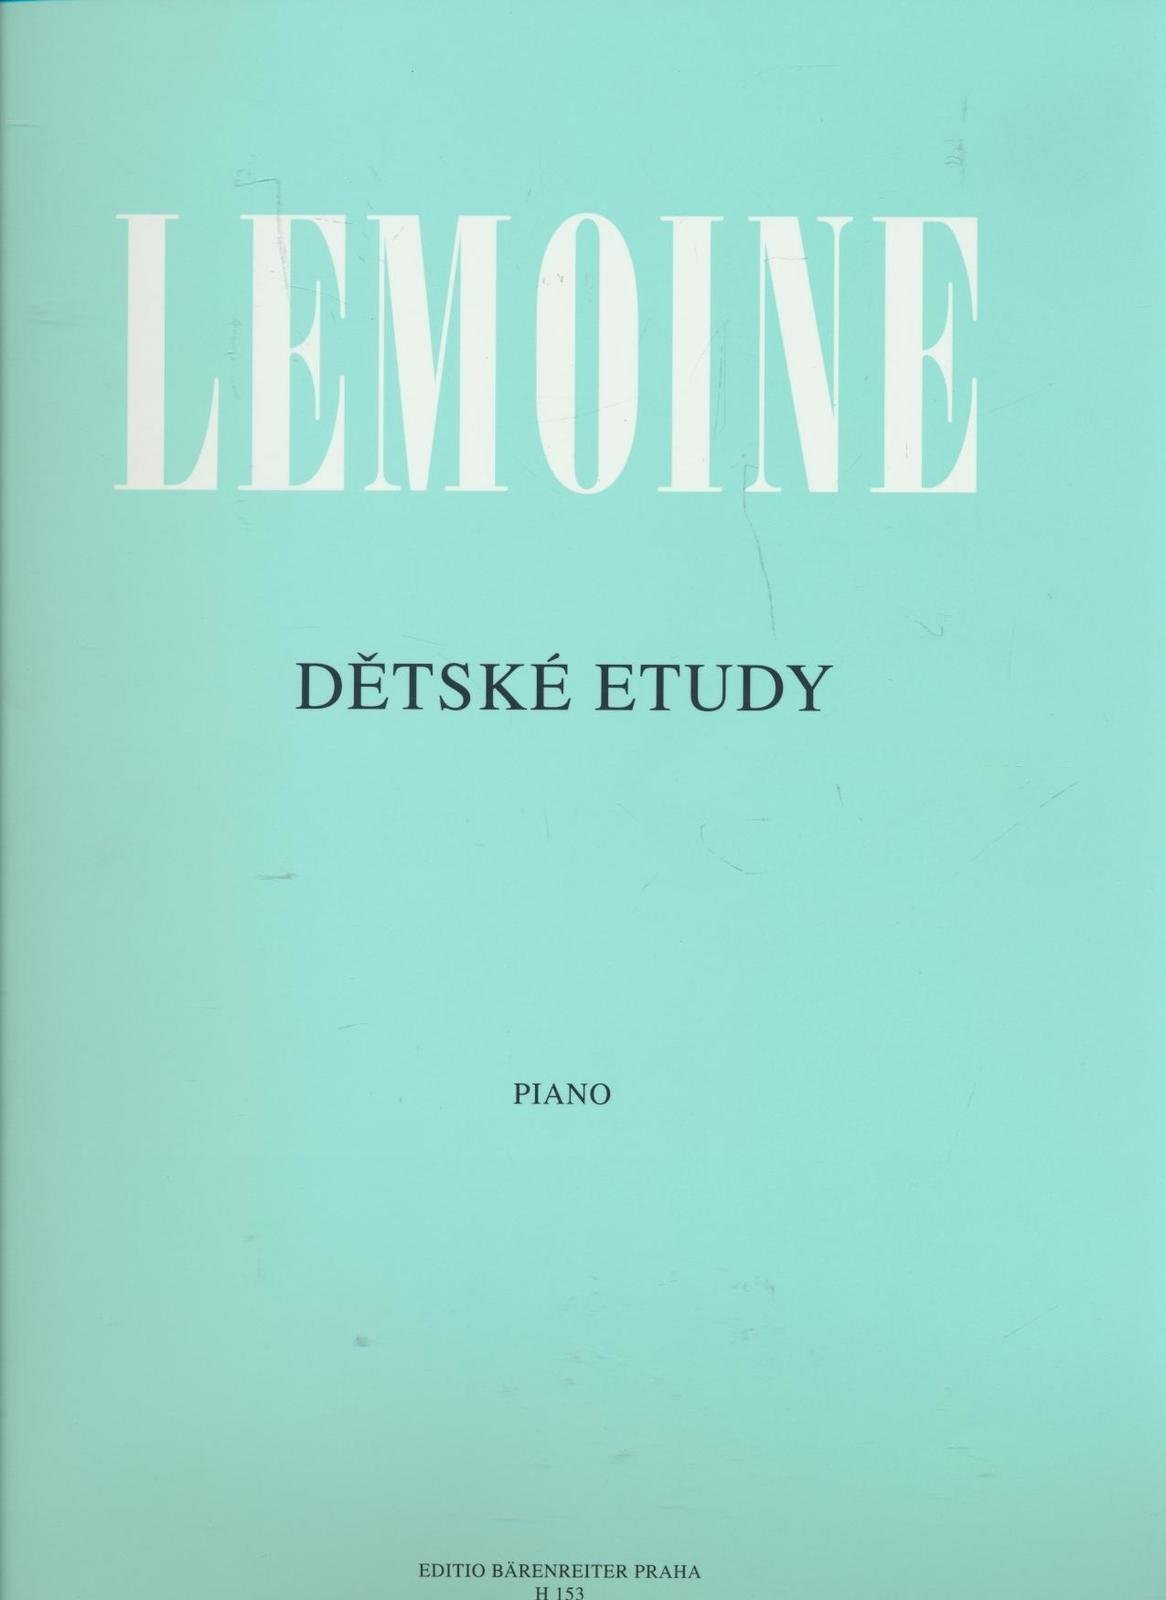 Partitions pour piano Henri Lemoine Detské etudy op. 37